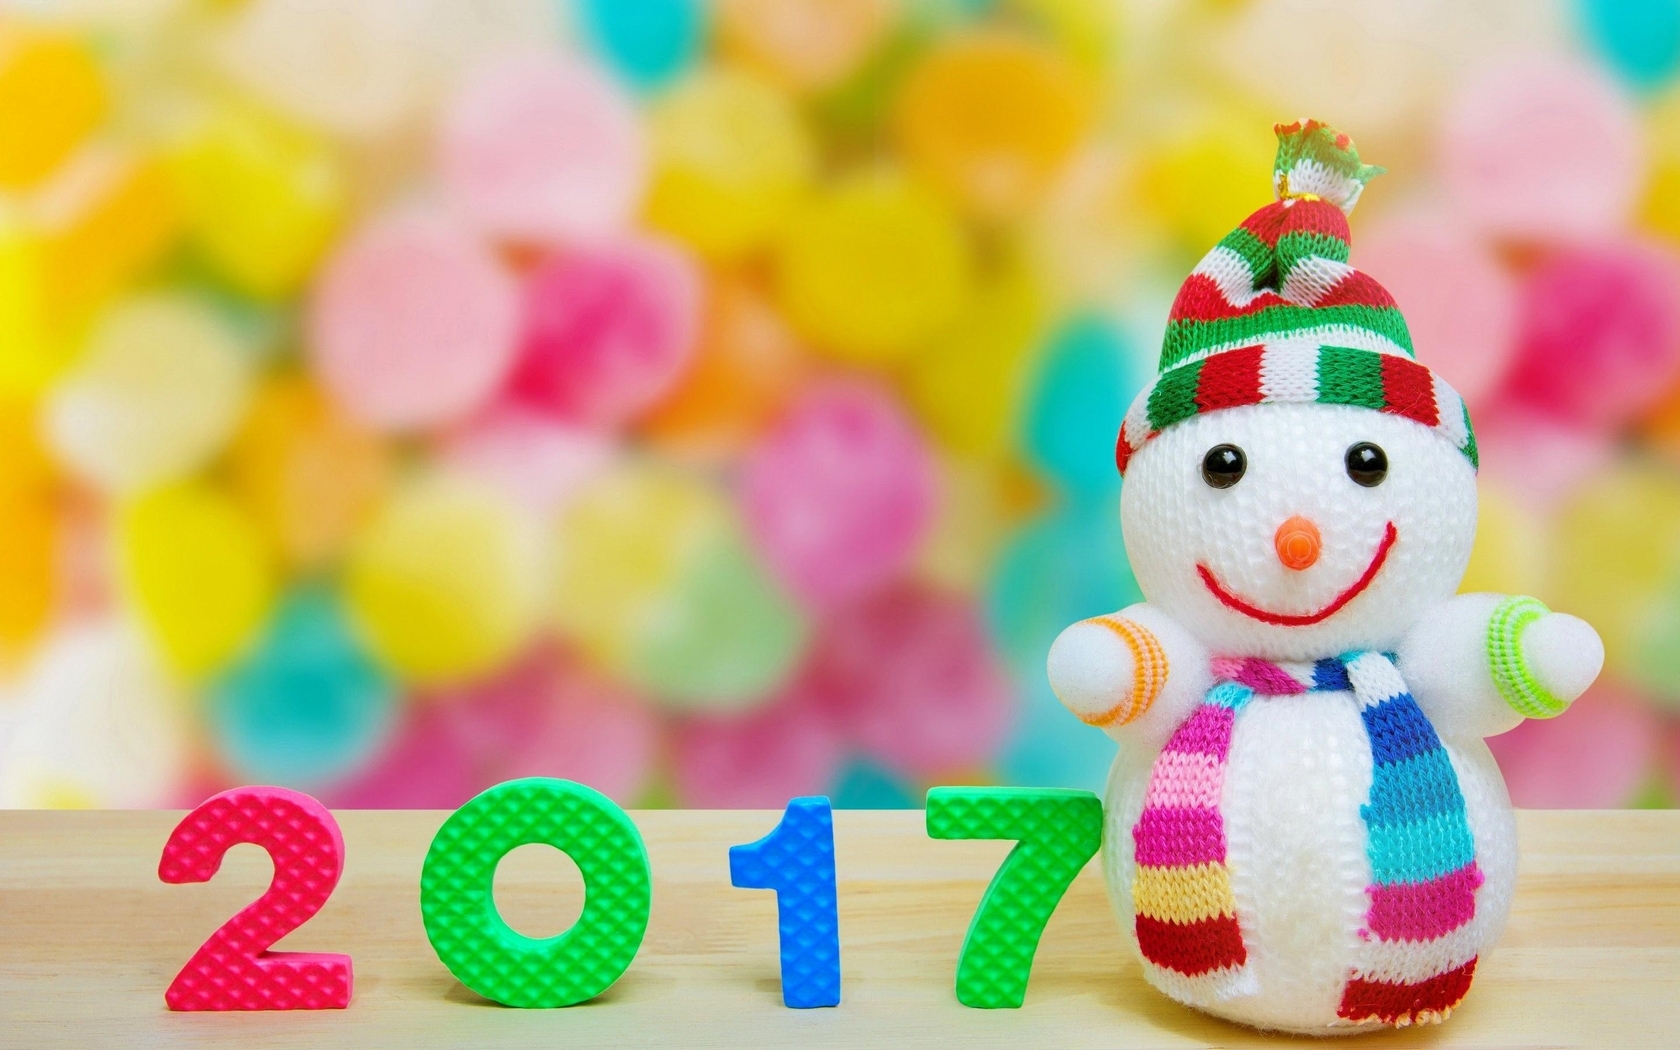 Картинка: Новый год, Рождество, снеговик, дата, цифры, шапка, шарф, улыбка